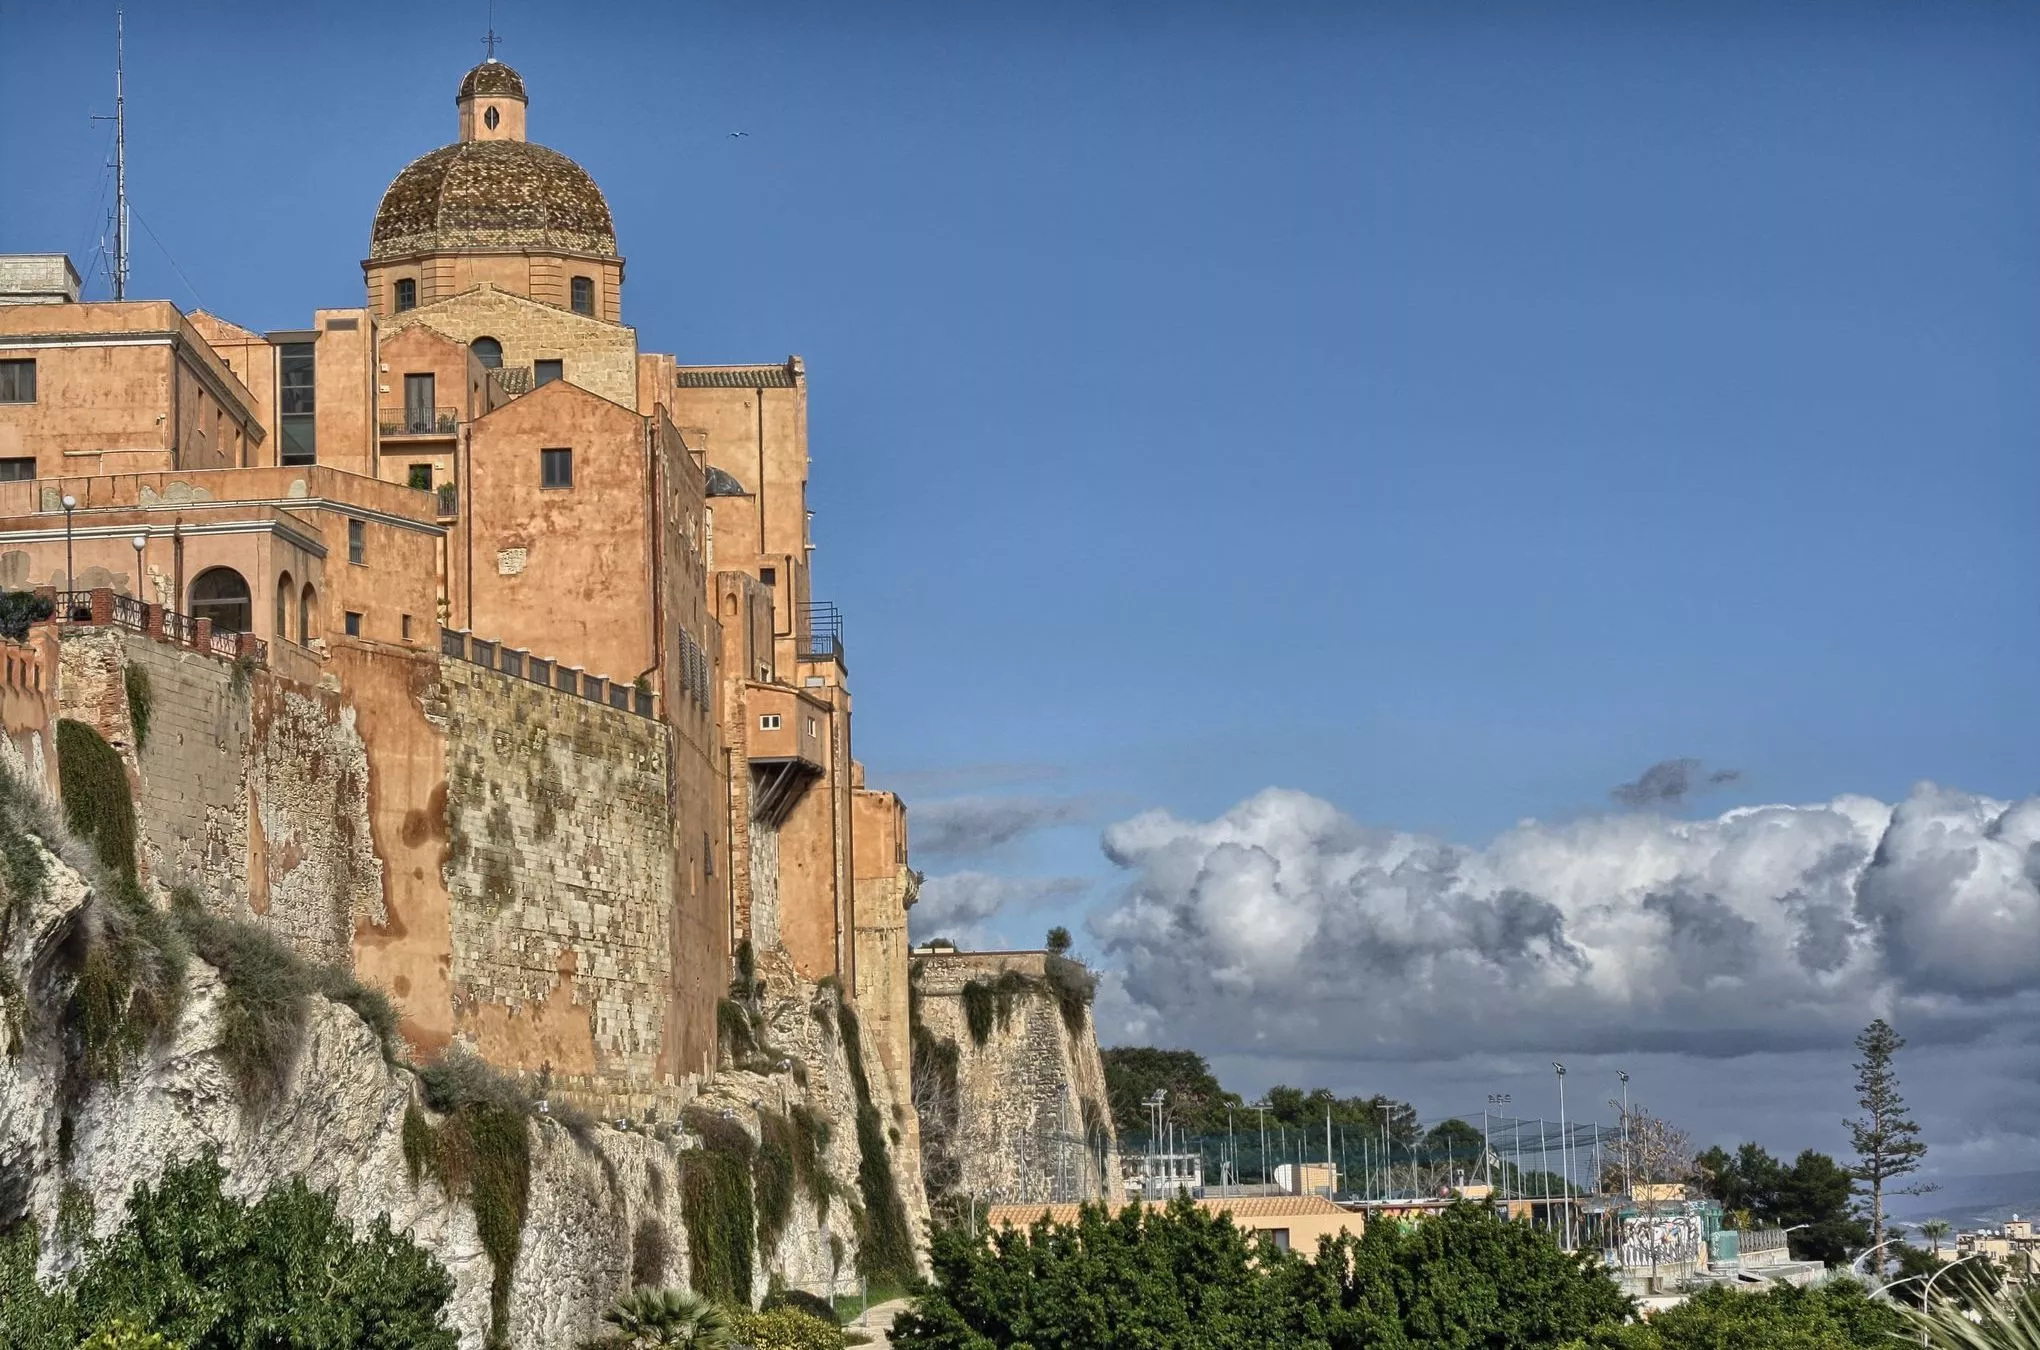 Castello, die höher gelegene Altstadt, wird von Festungsmauern umgeben. An der Spitze ragt die Kathedrale Santa Maria hervor